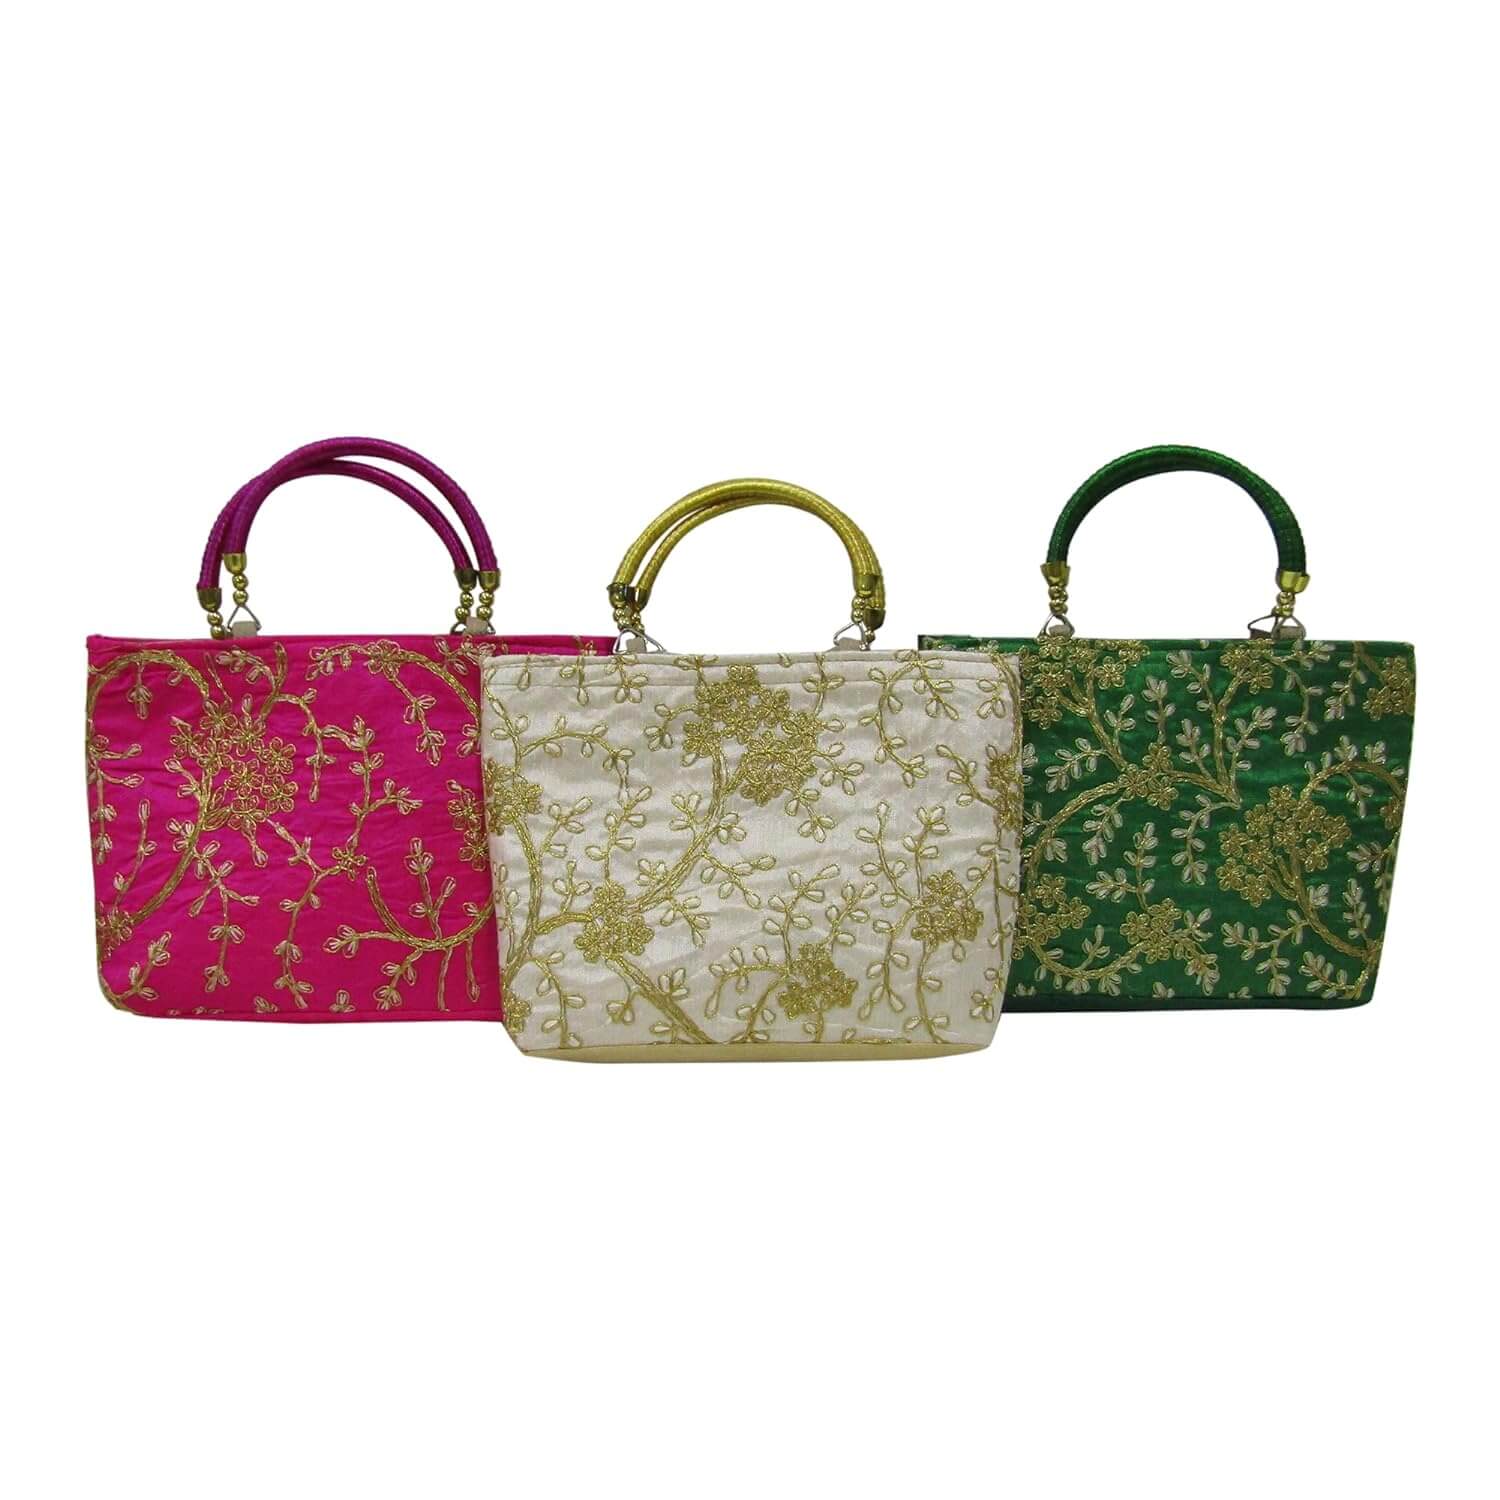 Buy Moti Design Handbag For Women | Ladies Purse Handbag | Women Gifts |  Side Handbags | Wedding Gifts For Women | Women Designer Bags | Travel Purse  Handbag | MT_Design_Moti Design_4 at Amazon.in